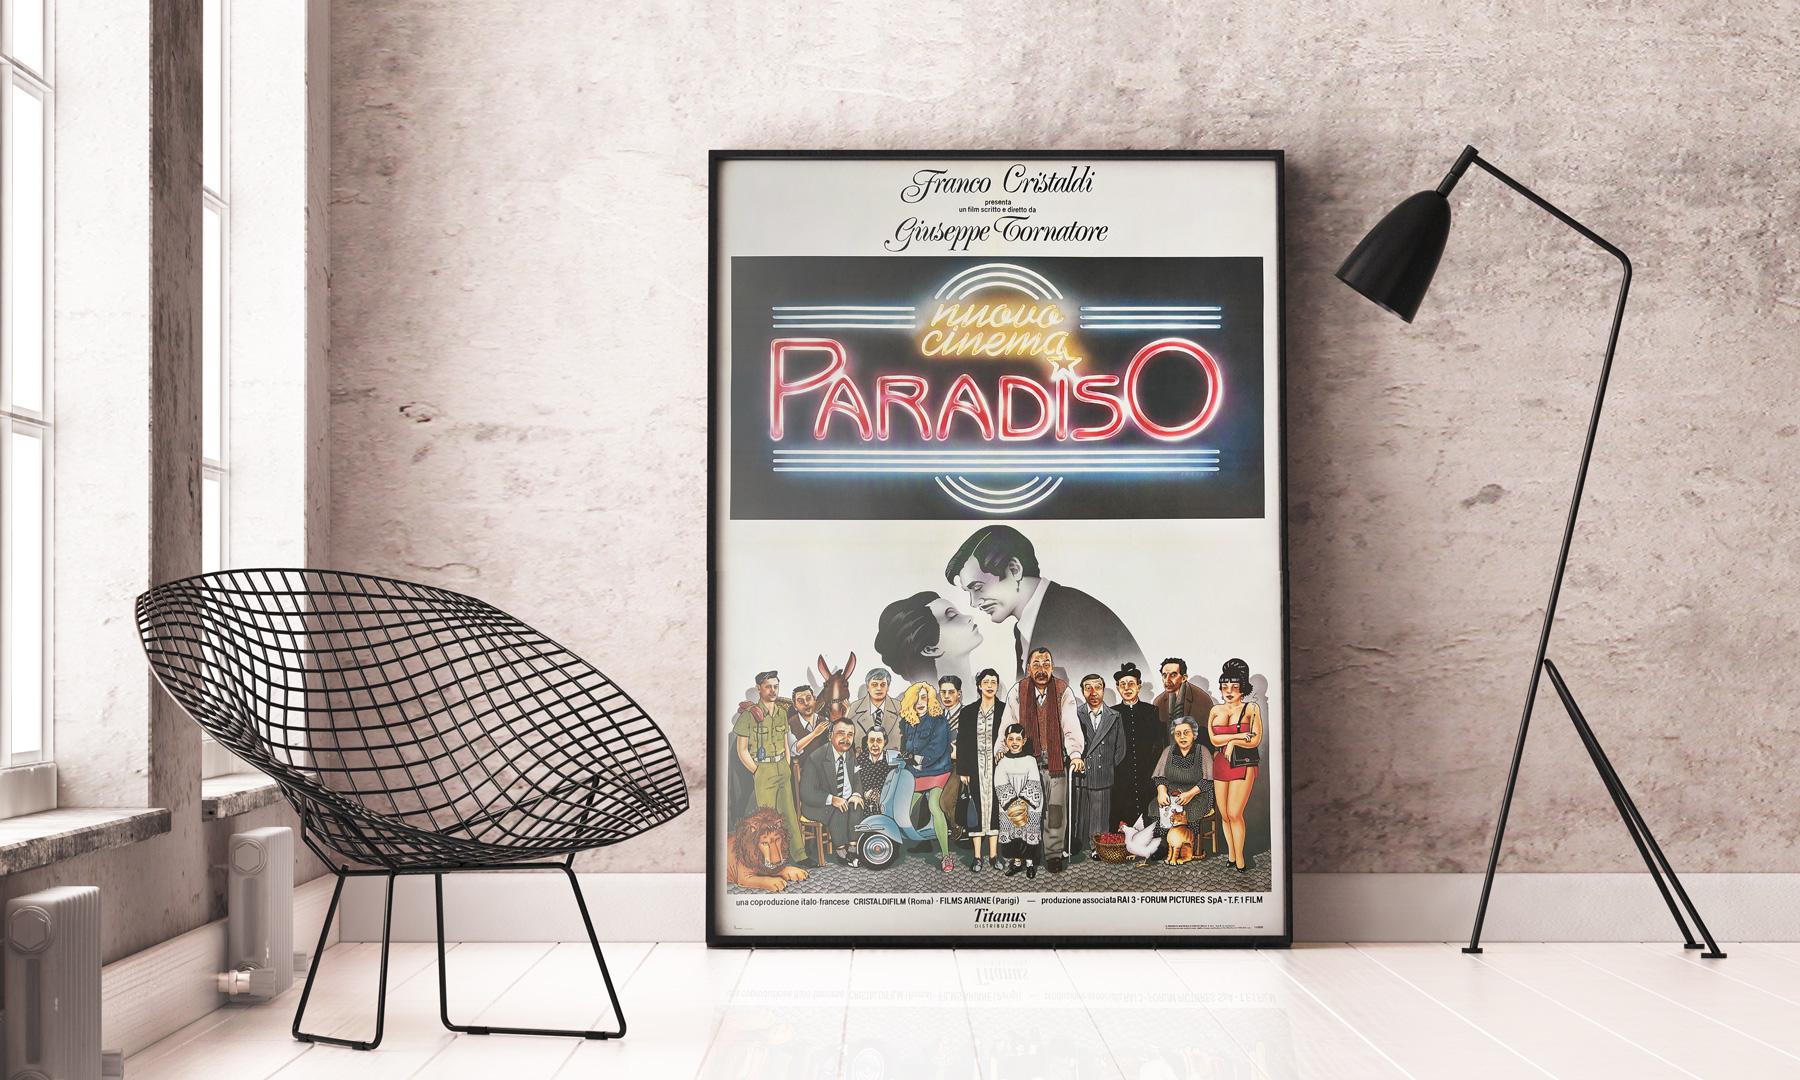 Cette affiche d'origine nationale pour le film Cinema Paradiso de Tornatore présente un graphisme merveilleusement amusant. Le design Cecchini est fantastique sur le magnifique et grand 2 Foglio italien.

Cette affiche de film vintage originale a